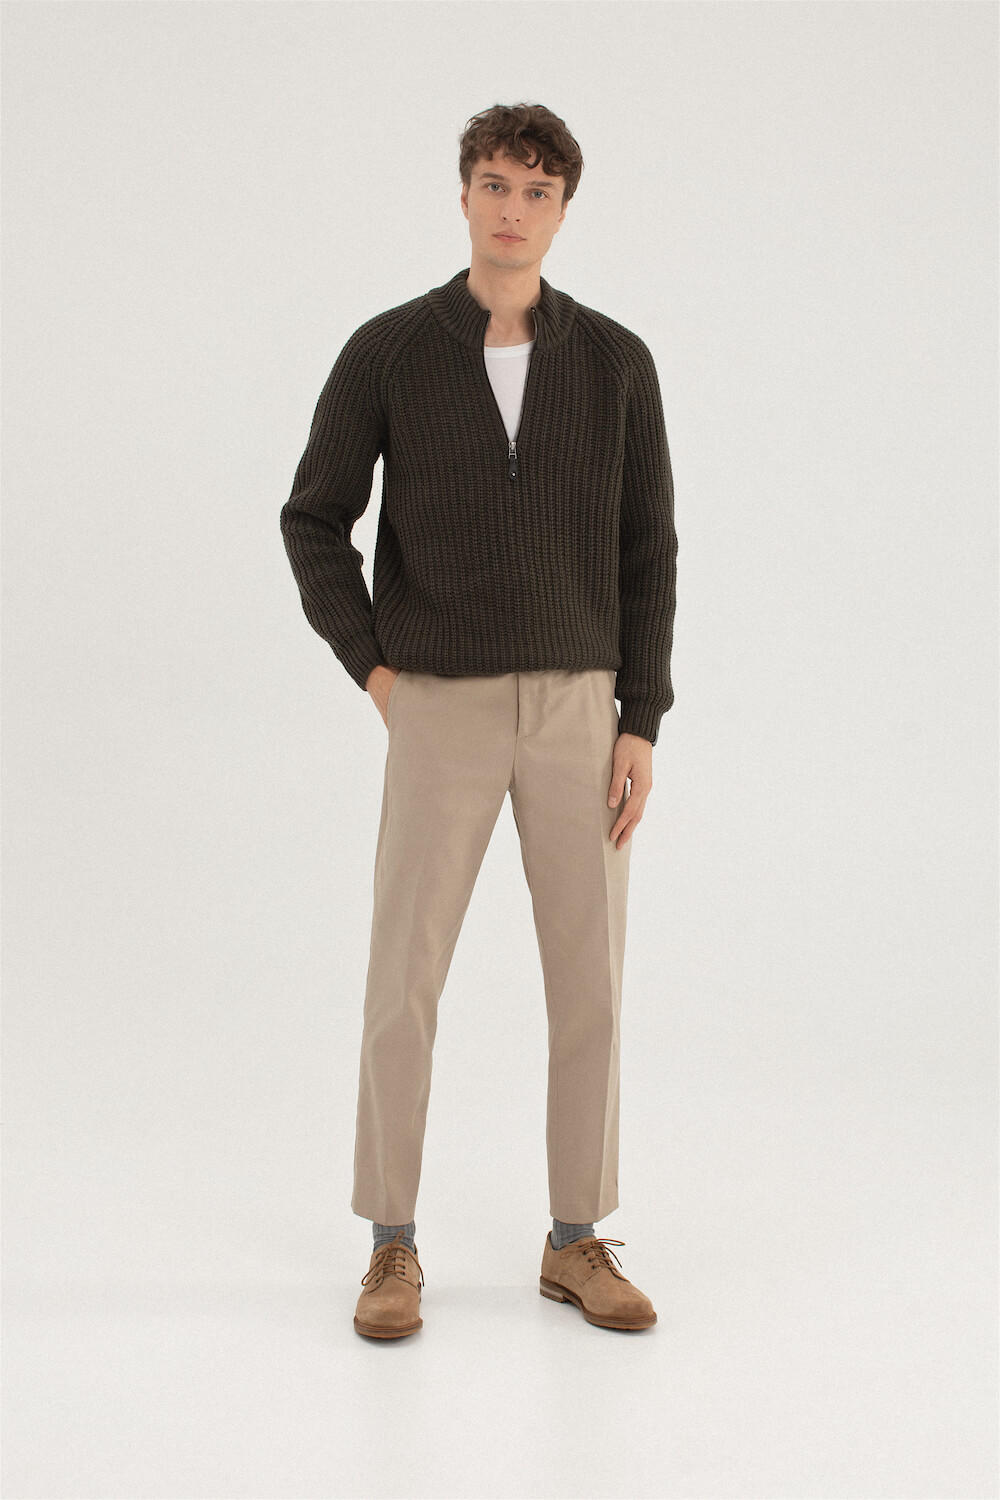 knitted woolen man sweater